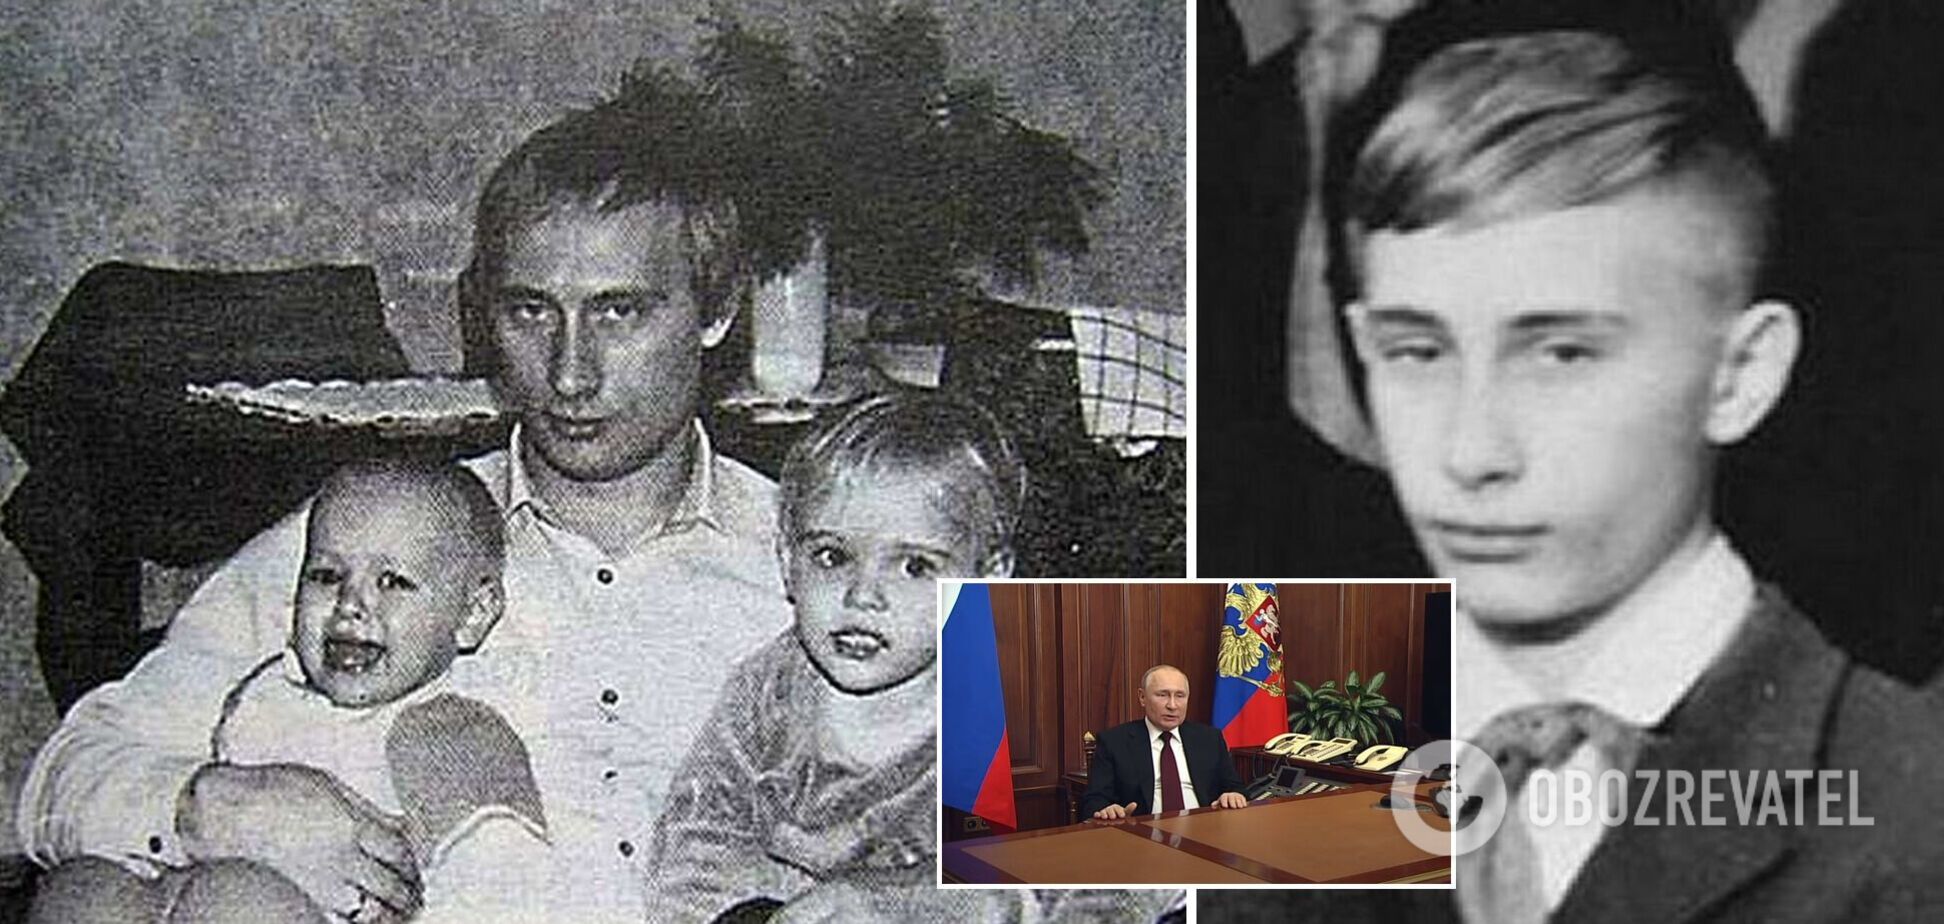 Хроника безумия Путина: как юный бандит стал агентом КГБ, захватил власть и теперь мечтает о Третьей мировой